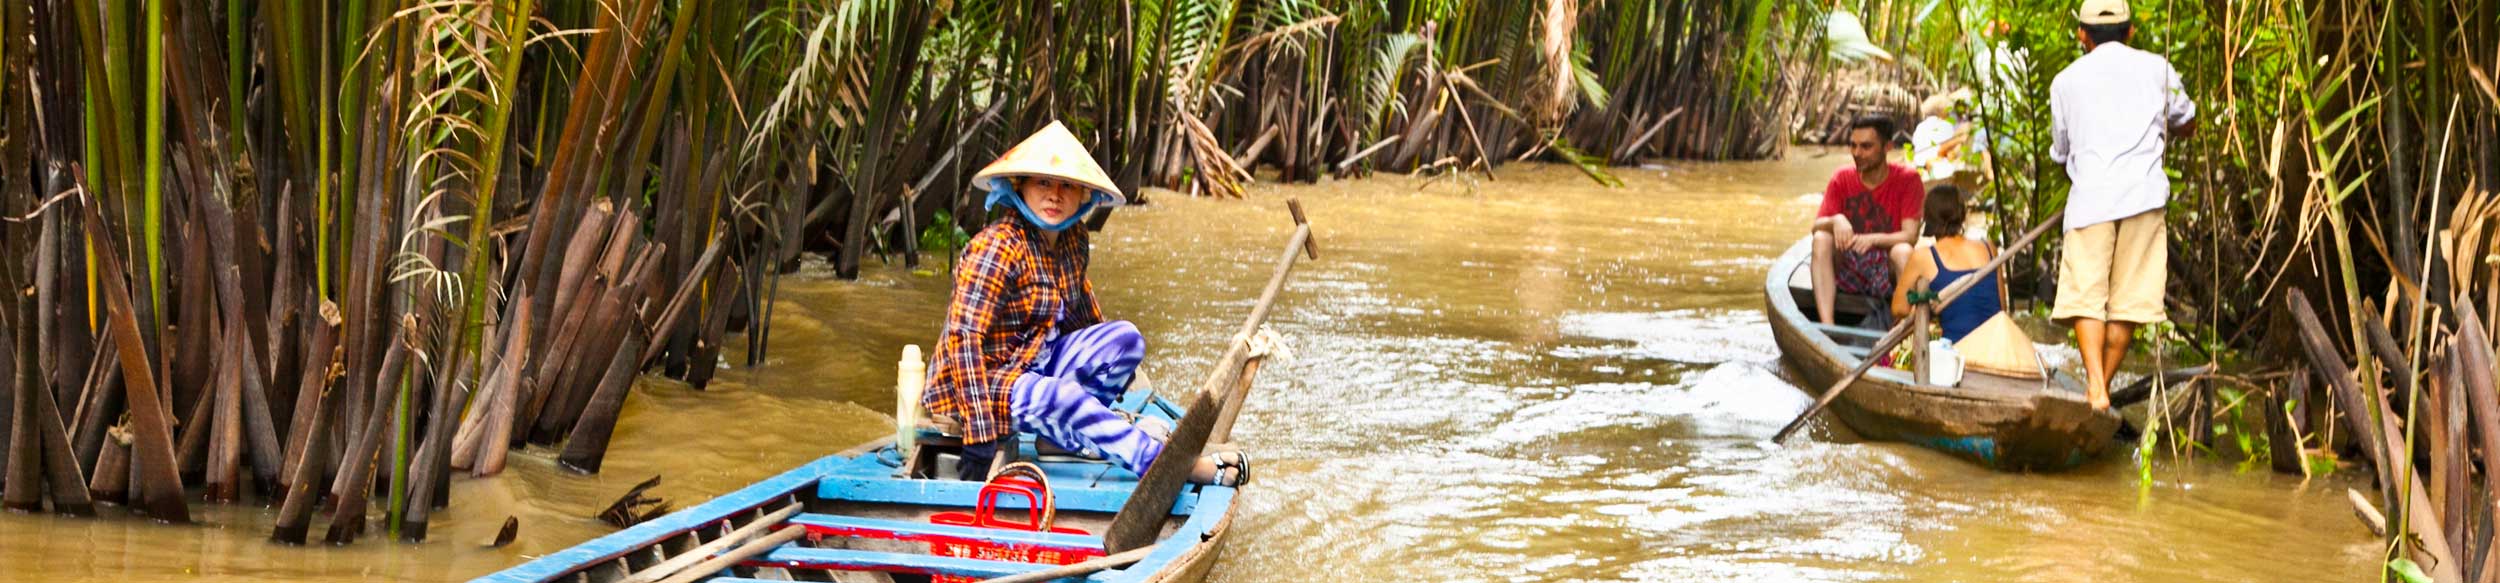 Le sampan sur le Mekong